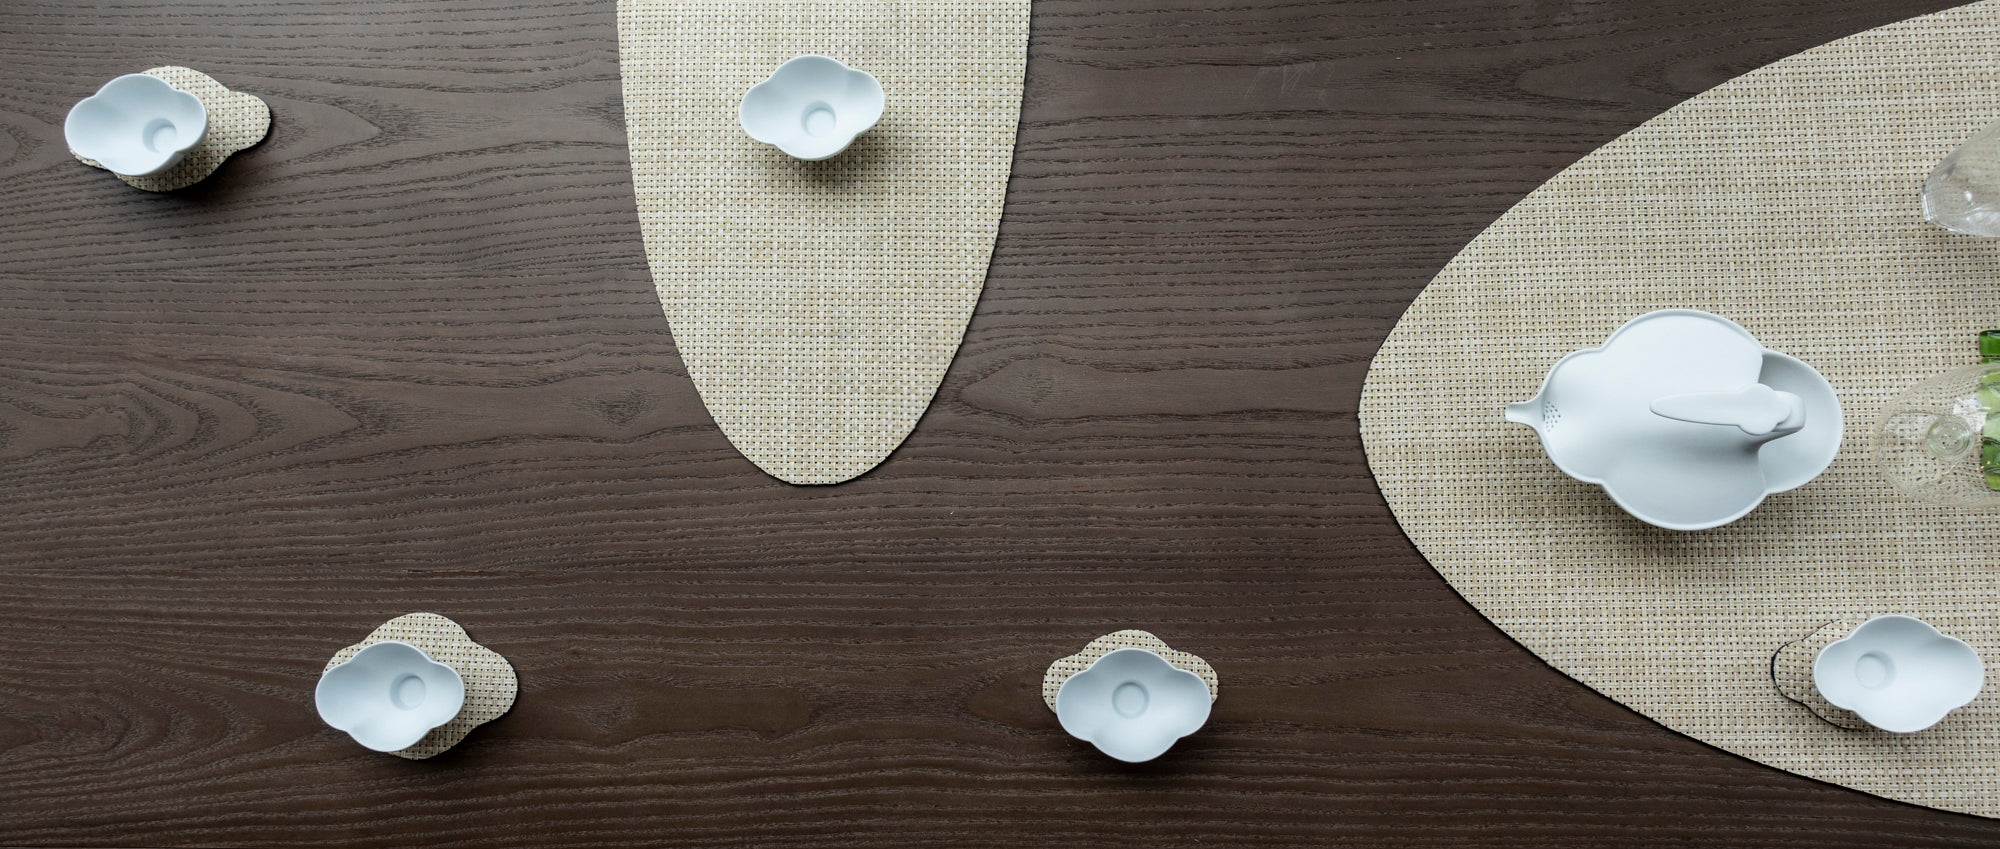 八方新氣藝術瓷器 藝術家王俠軍設計創意白瓷 包含生活器皿、咖啡茶具、瓷偶、佛像 都會斟酌現代茶席 